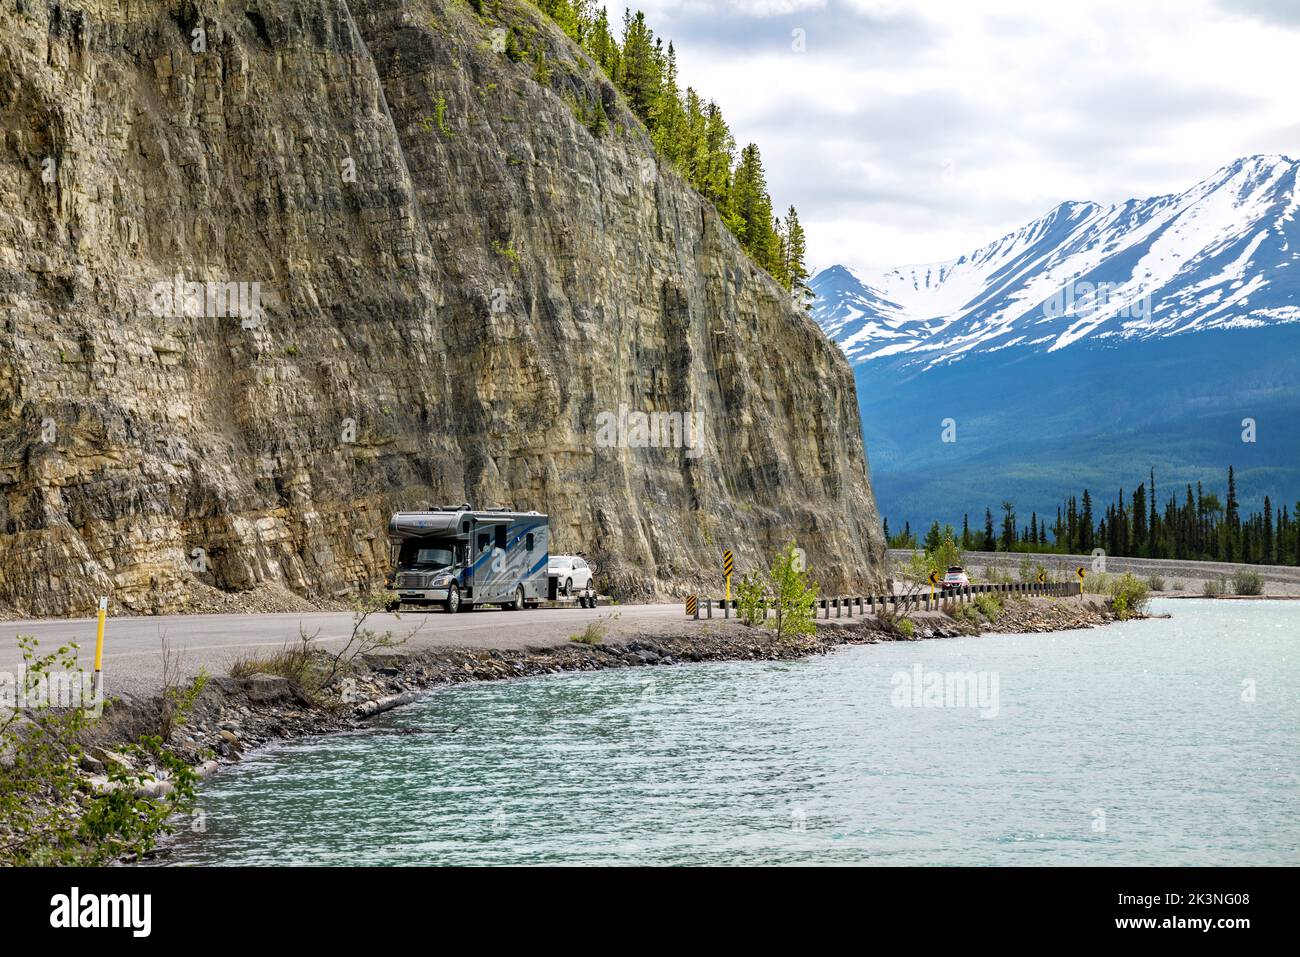 Le campeur voyage sur la route de l'Alaska le long du lac Muncho, entouré par les montagnes Rocheuses canadiennes, la Colombie-Britannique et le Canada Banque D'Images